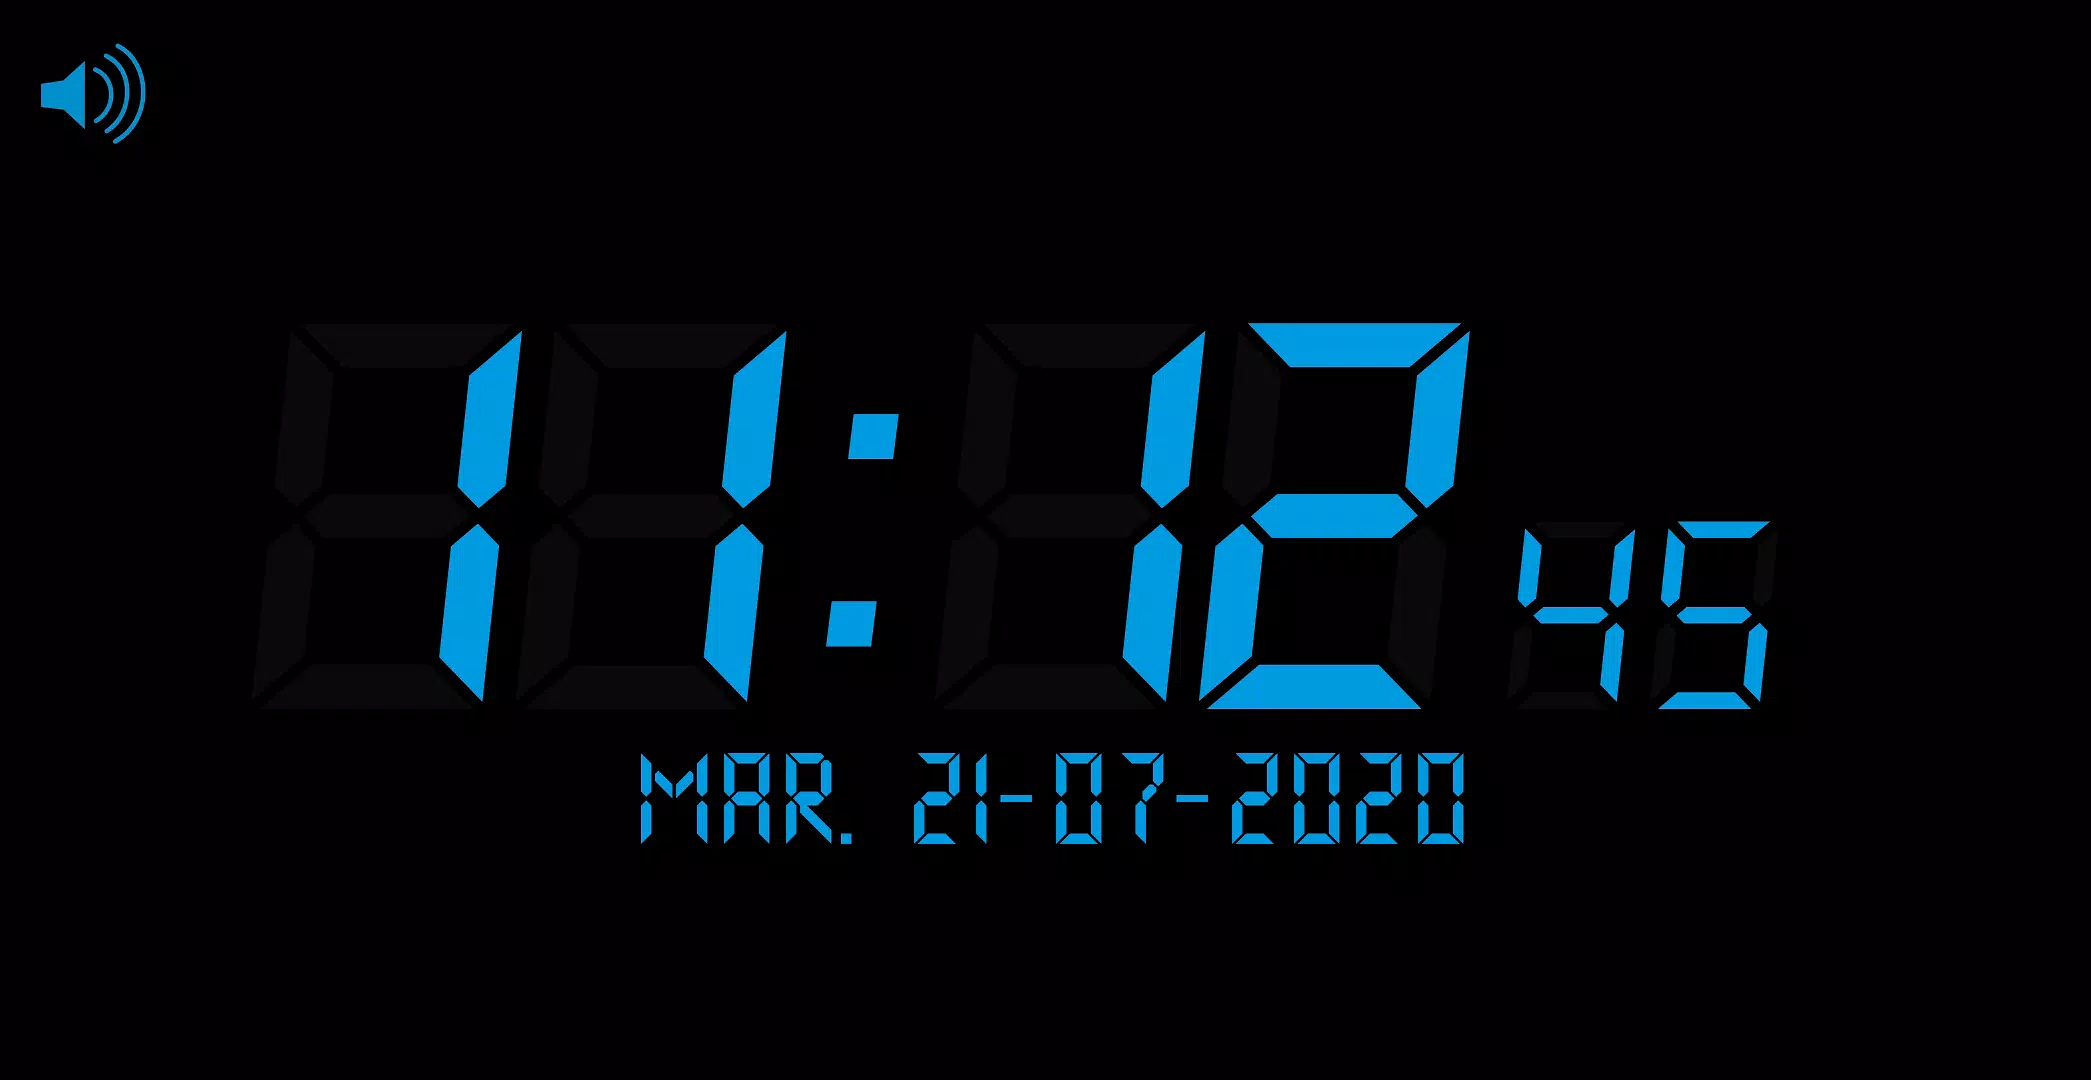 307x450 Alarm mp3clock. Dark Design Clock 3 am. Alarm mp3. Часы мп 3